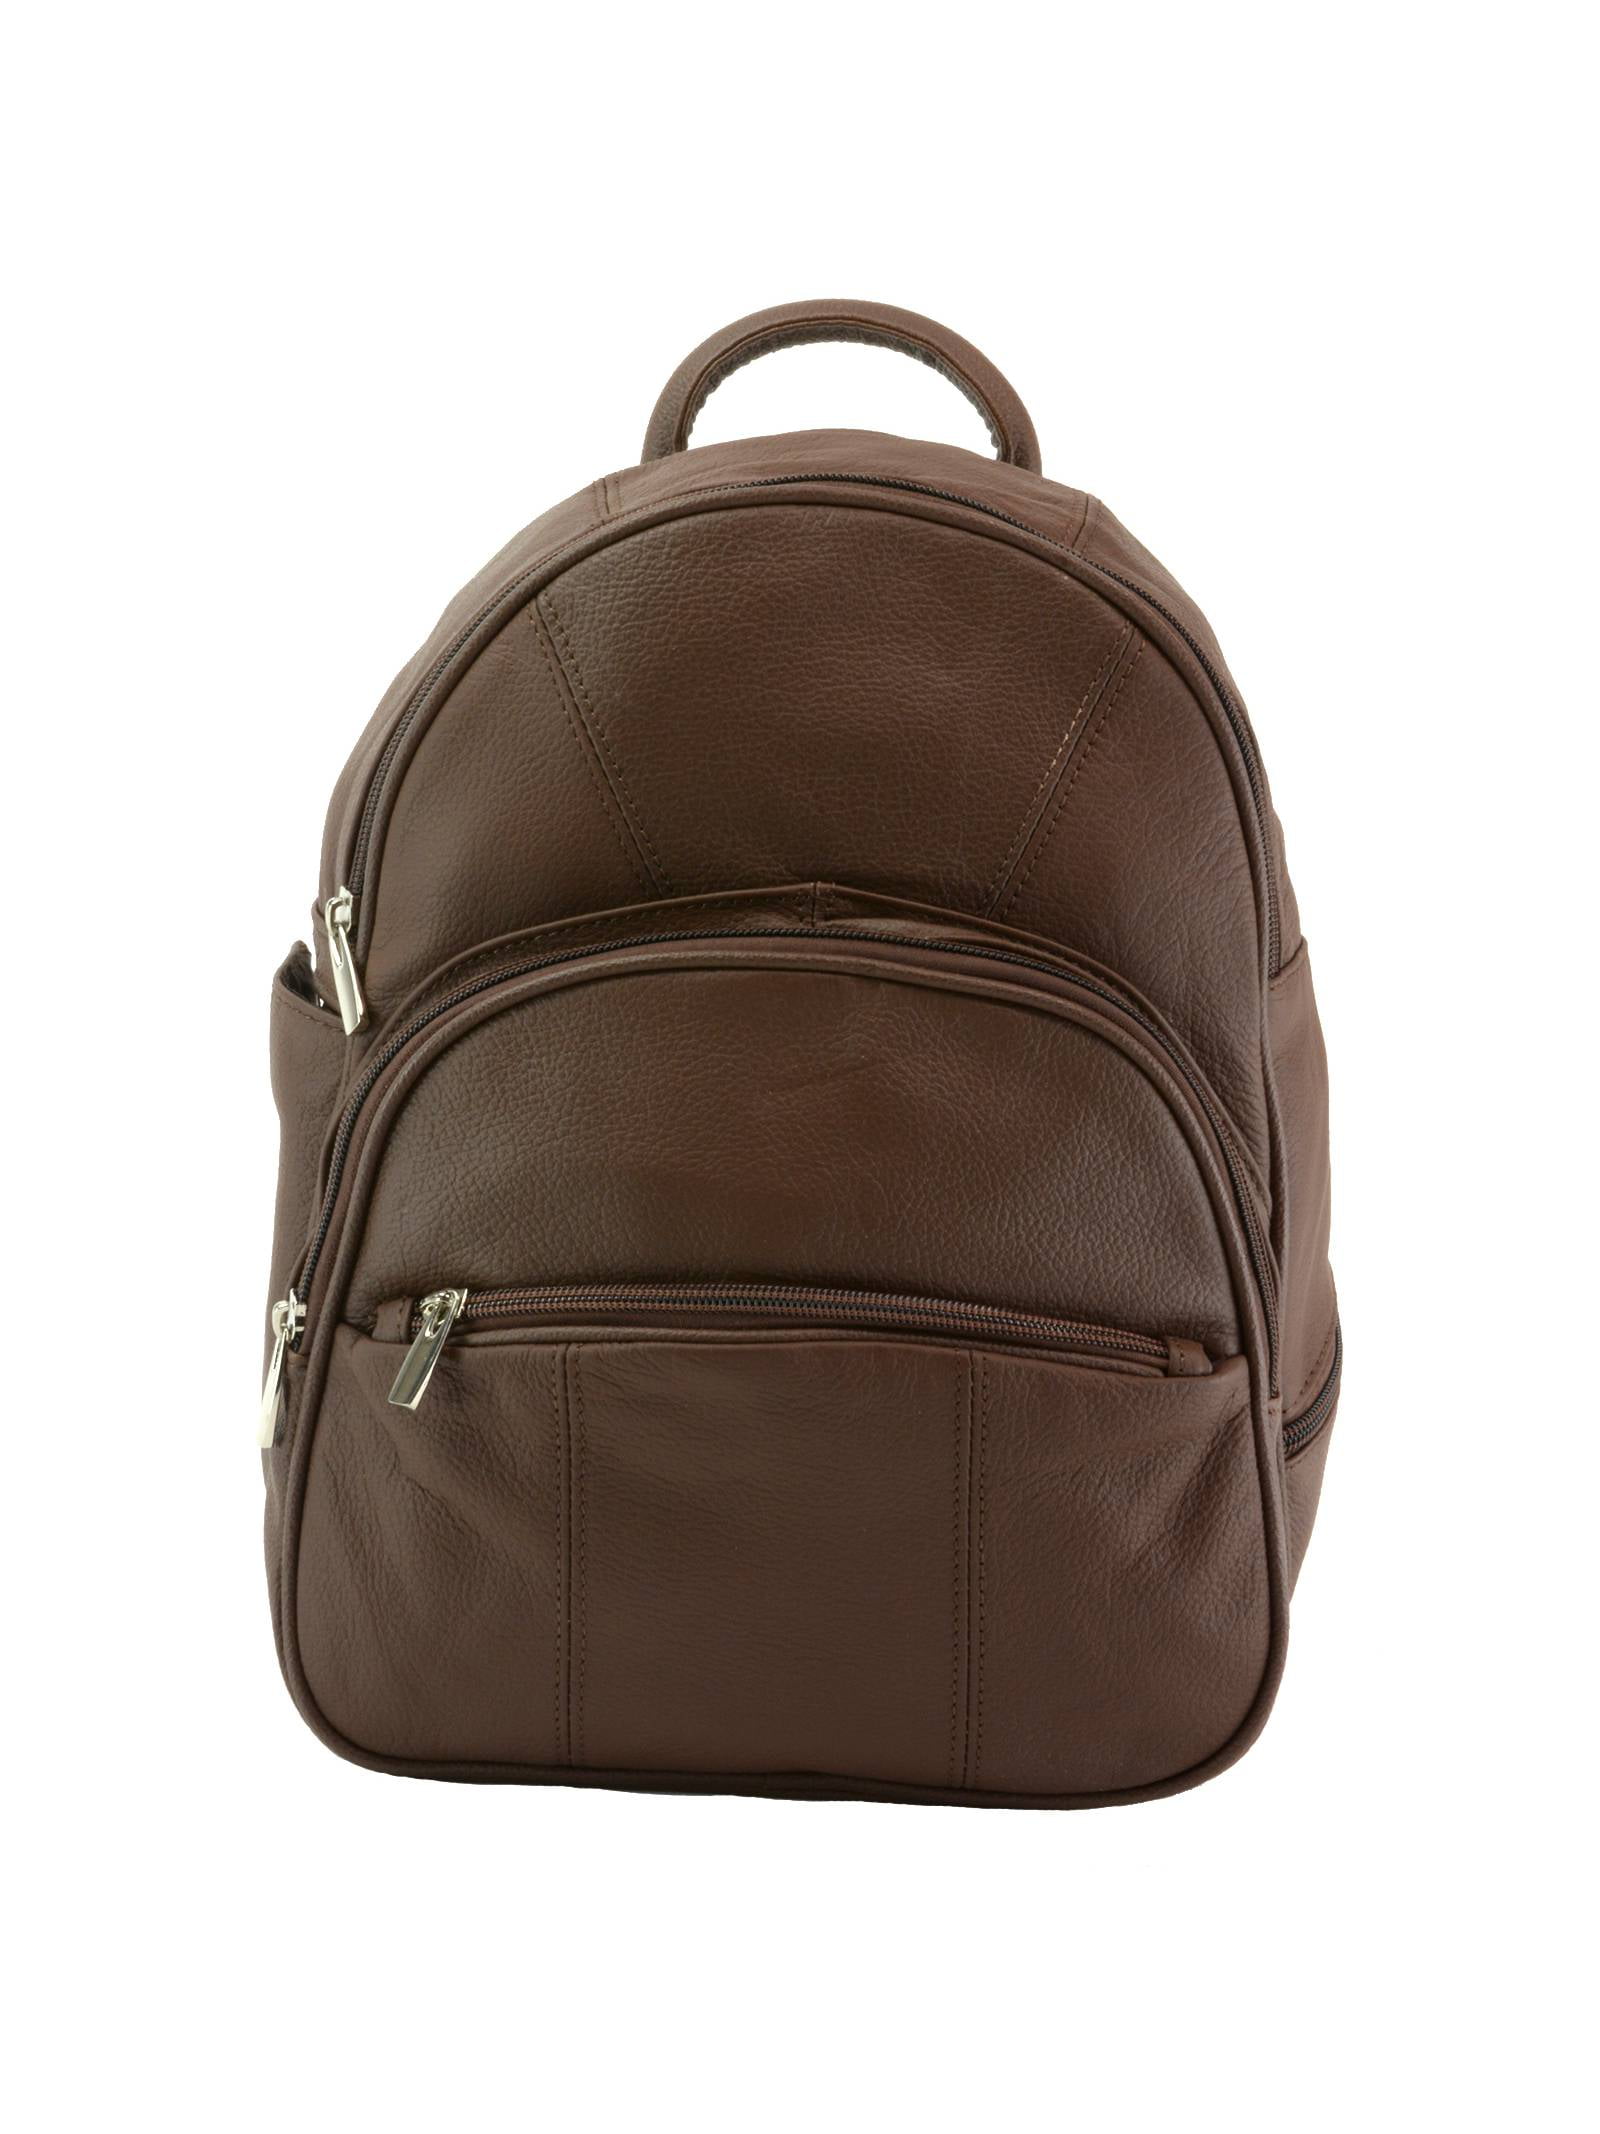 Details about   Backpack Leather Bag Brown Shoulder Handbag Travel Rucksack CHRISTMAS GIFT